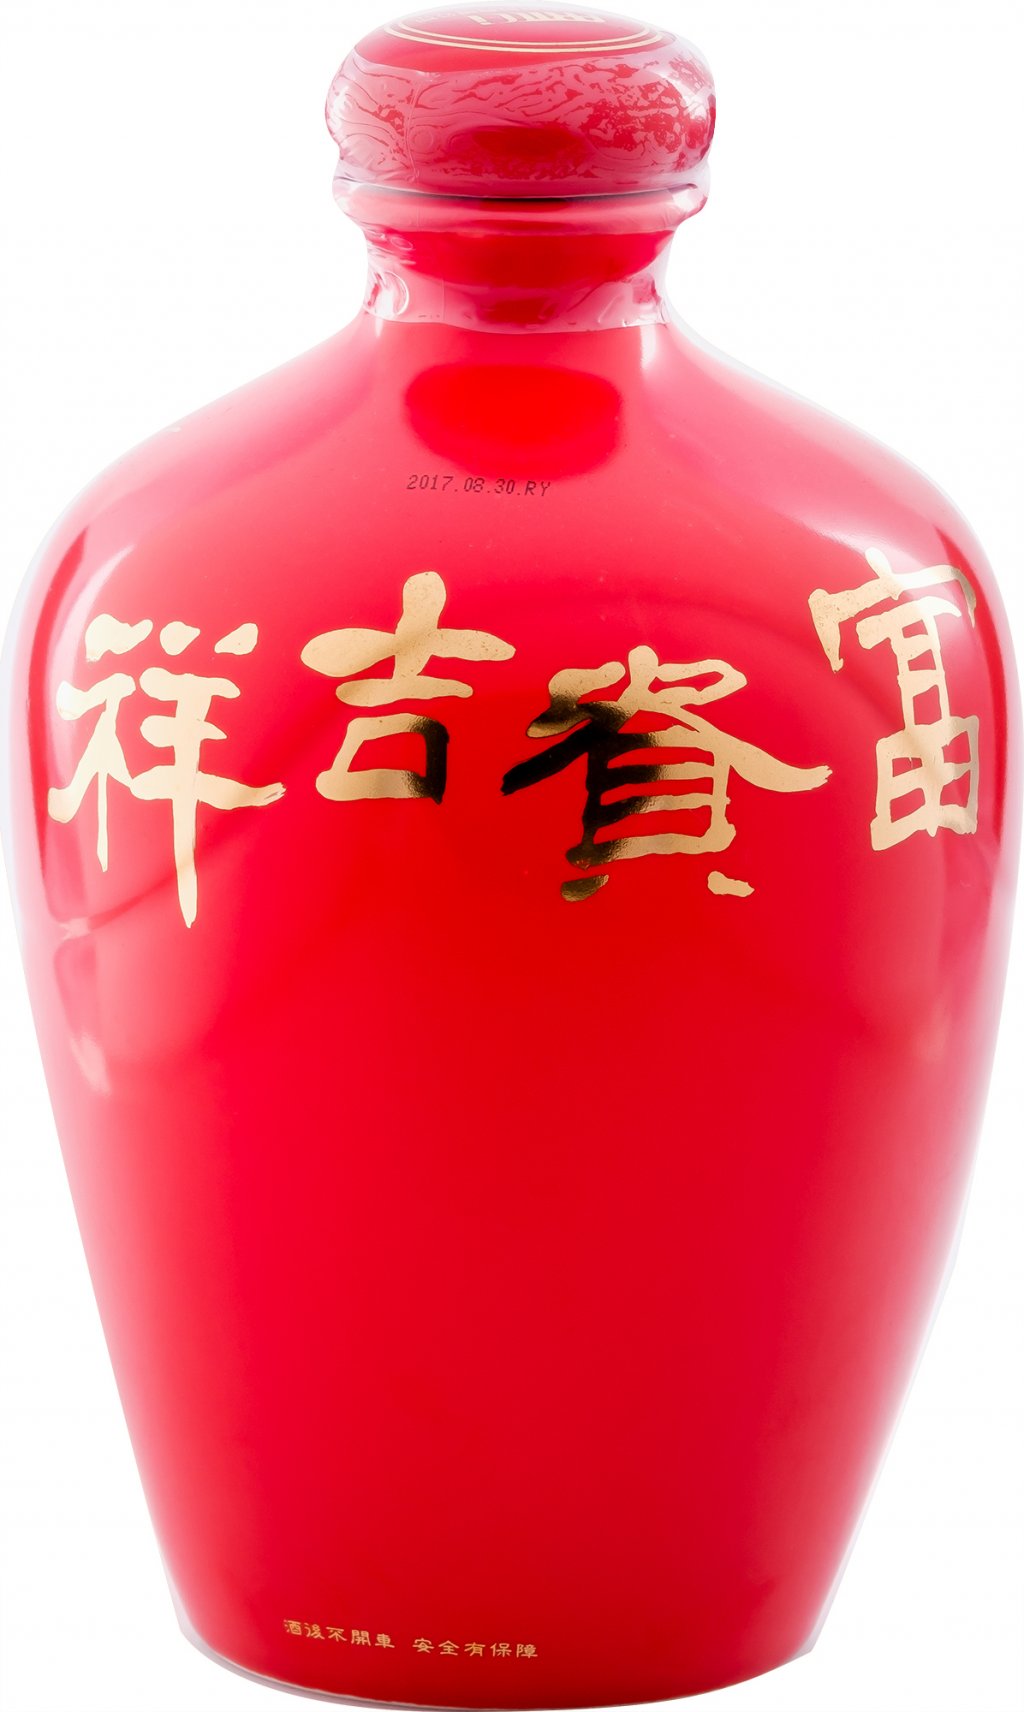 【台湘名家守正展】董加添 /<br>富貴吉祥(二) | 書畫瓷瓶高粱酒